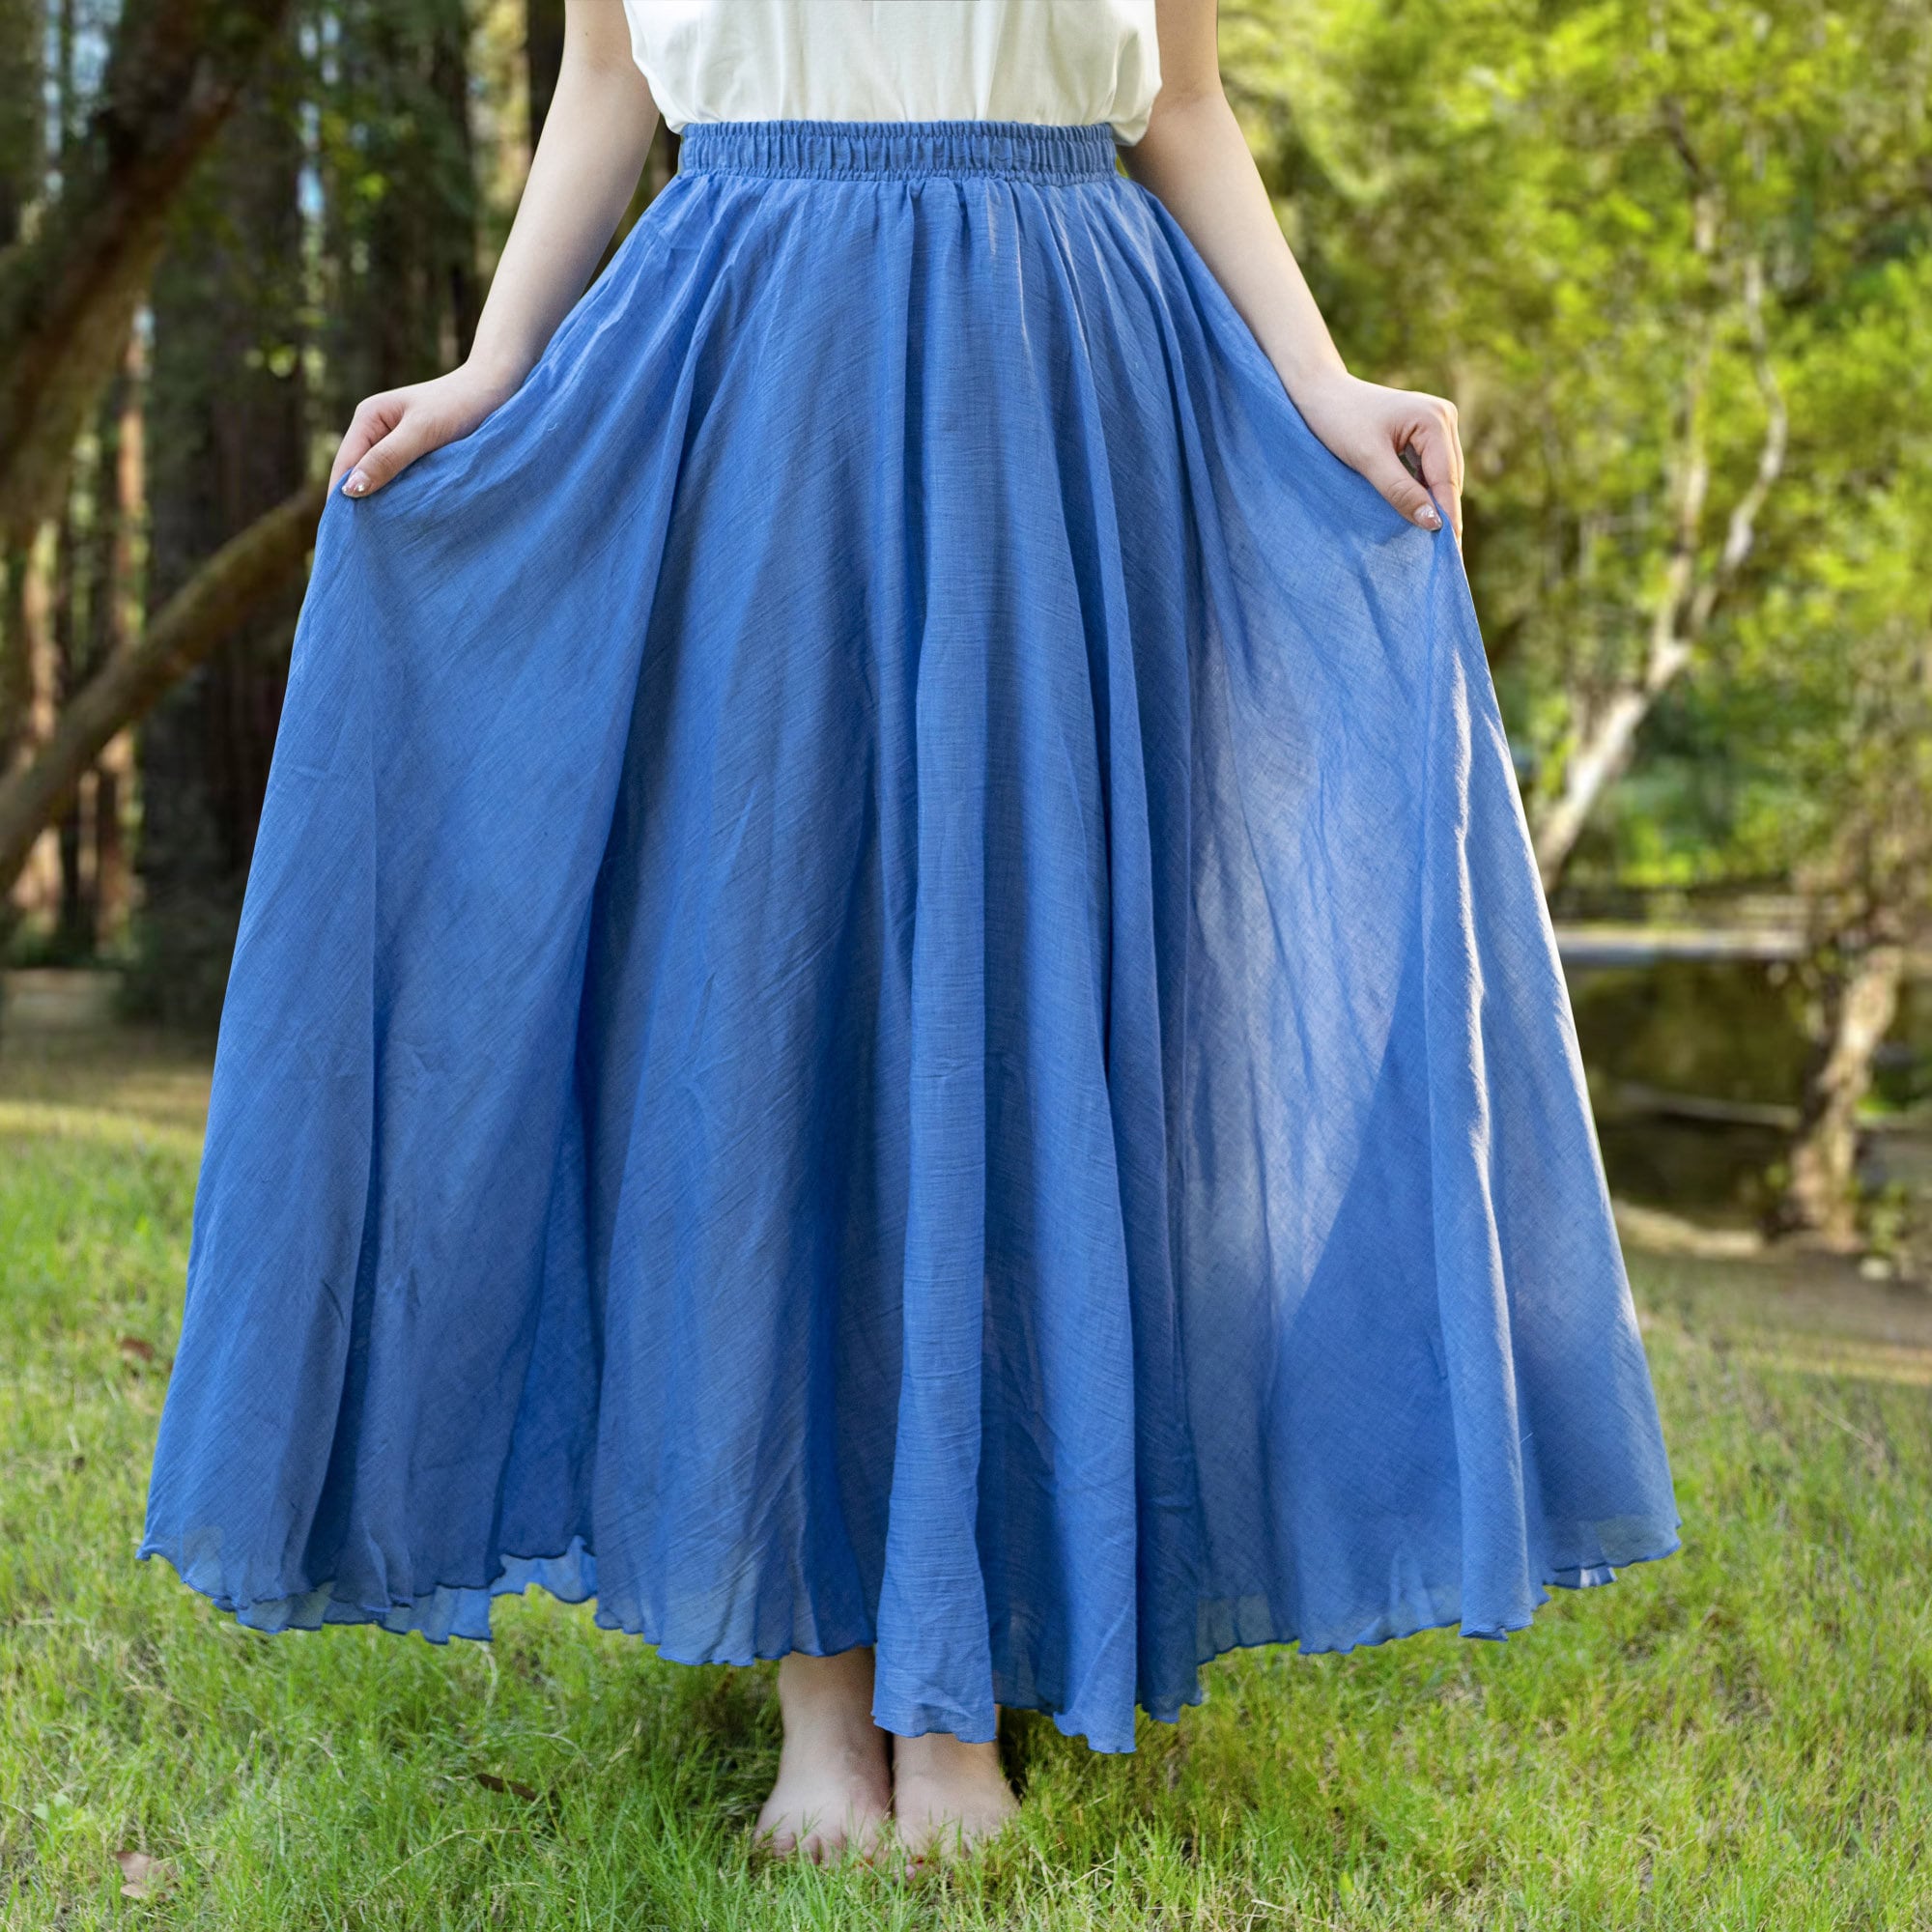 Cotton linen skirt soft and flowing linen skirt travel skirt beach skirt gift for her denim blue，Pockets and waist can be customized